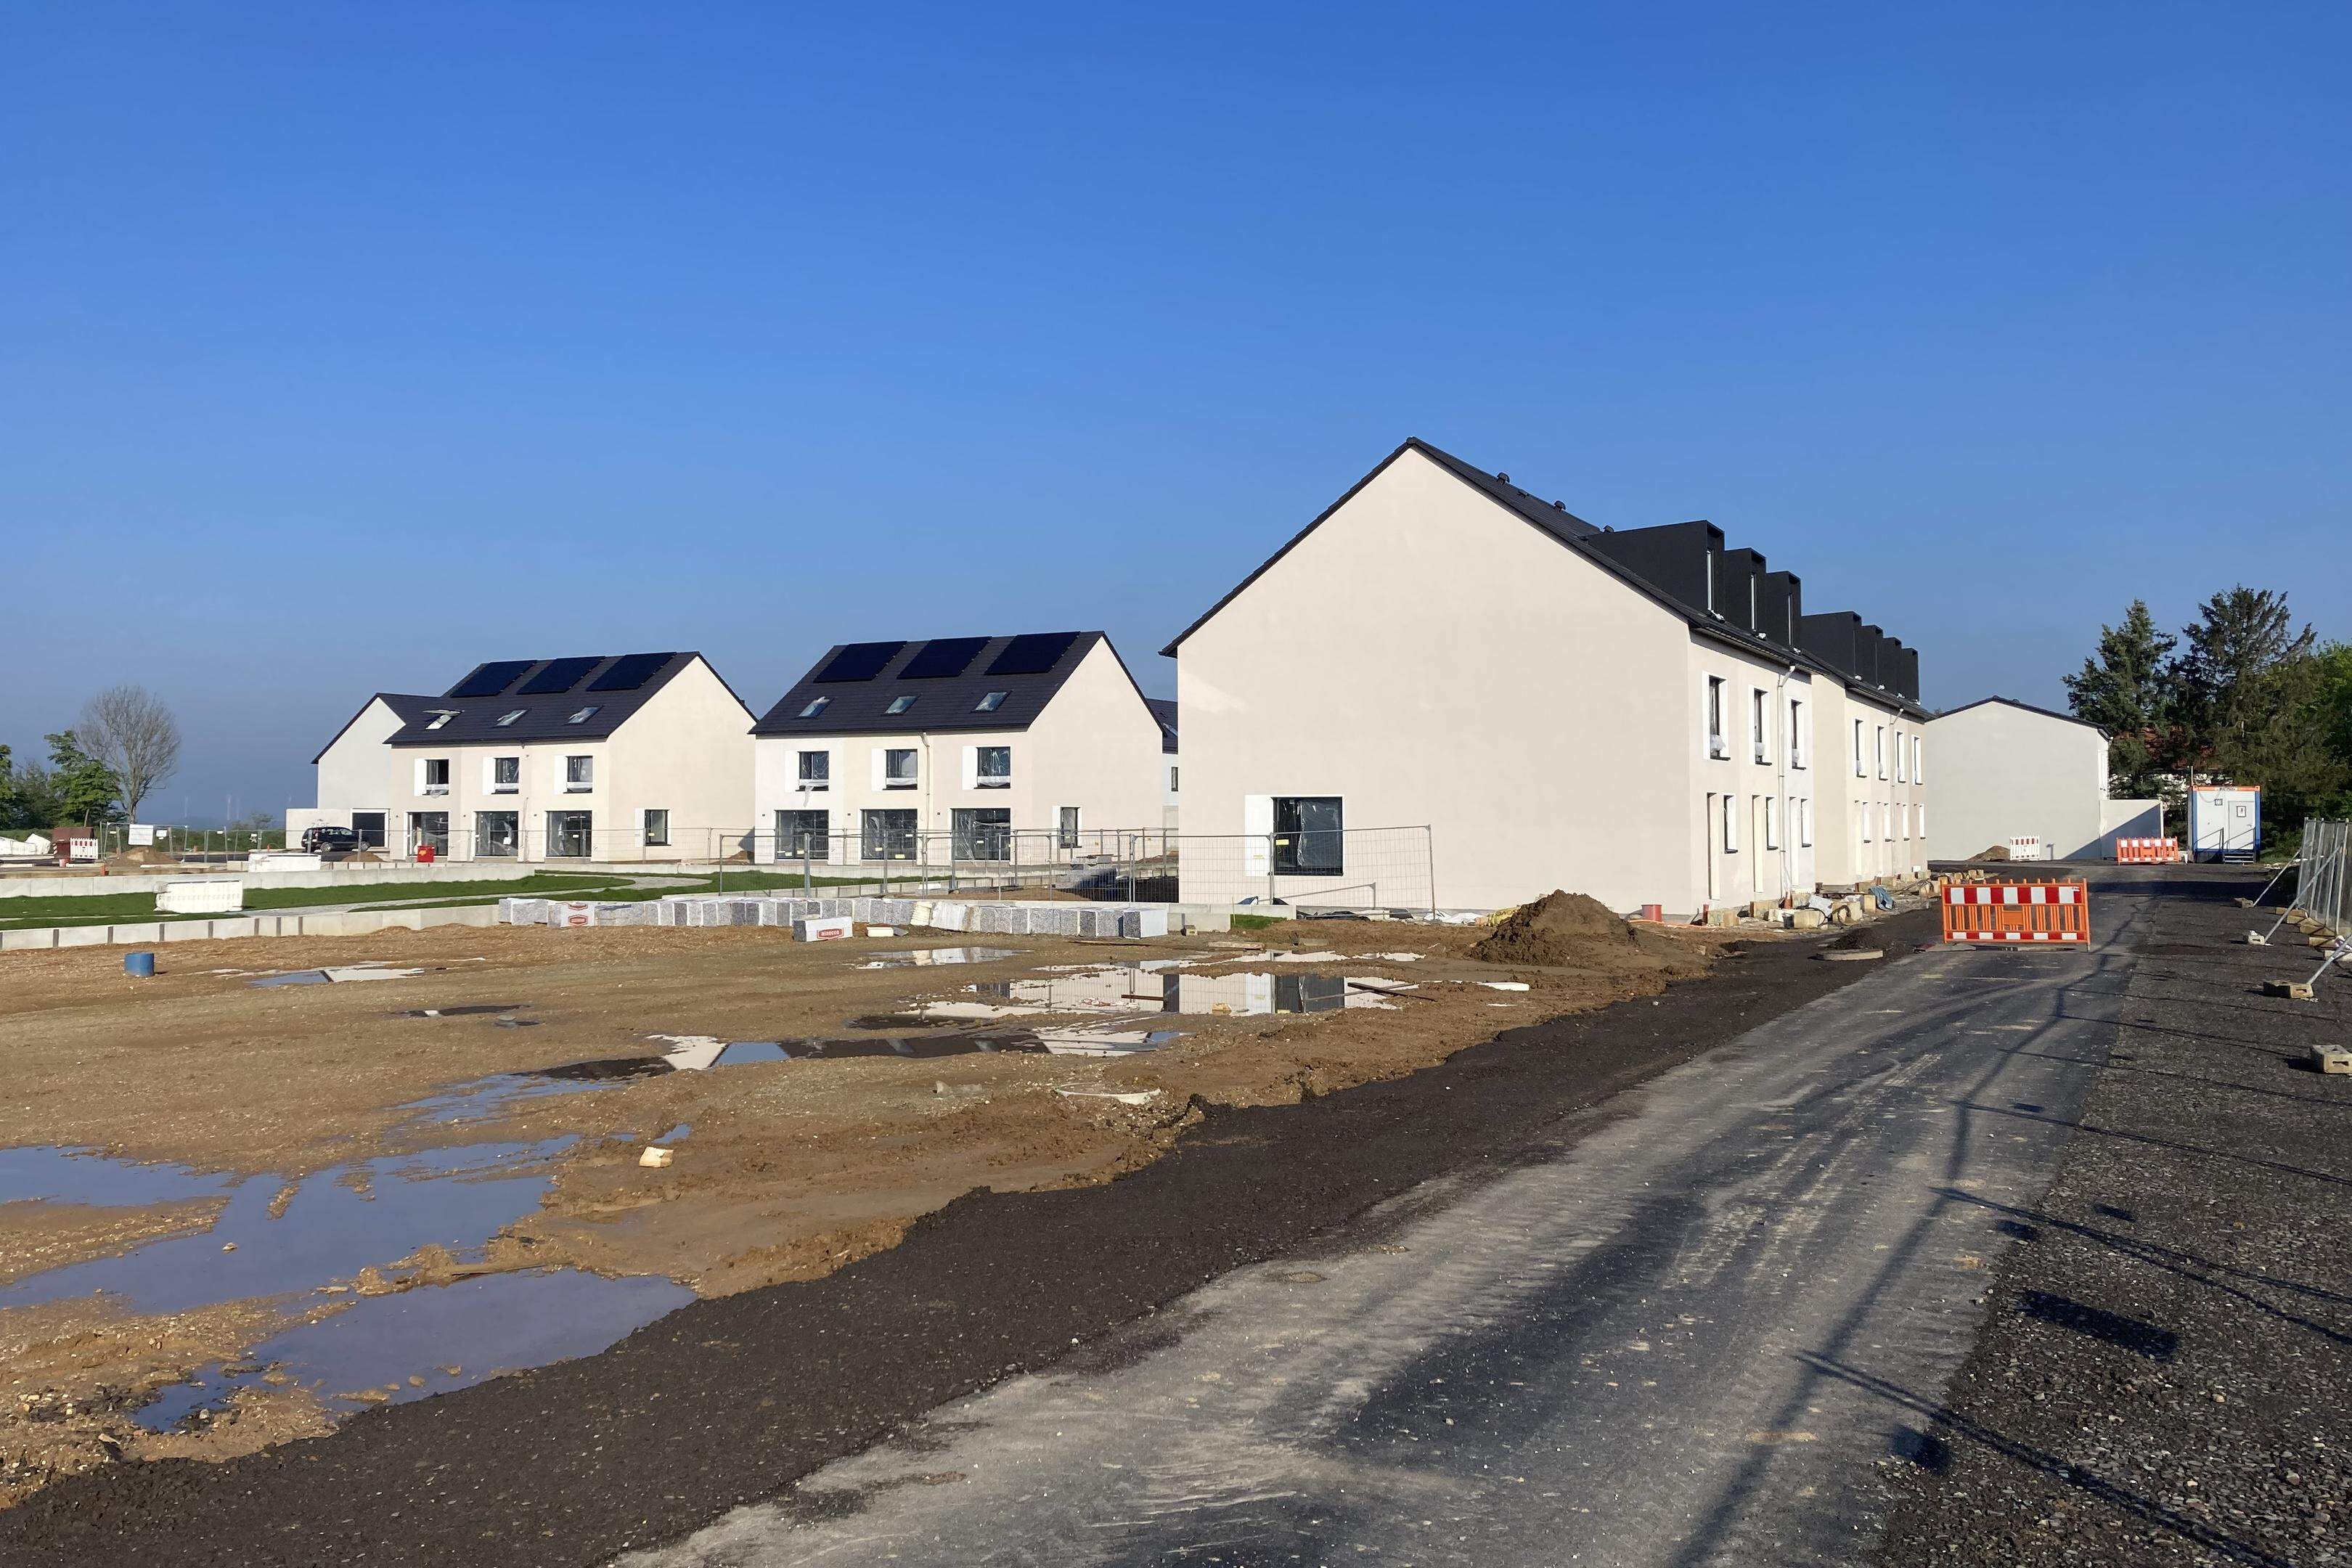 29 Reiheneinfamilienhäuser sind im Baugebiet Schneiderstraße an der Merscher Höhe errichtet und bis Ende des Jahres bezugsfertig. Bei entsprechender Nachfrage sollen insgesamt 92 Einheiten gebaut werden.